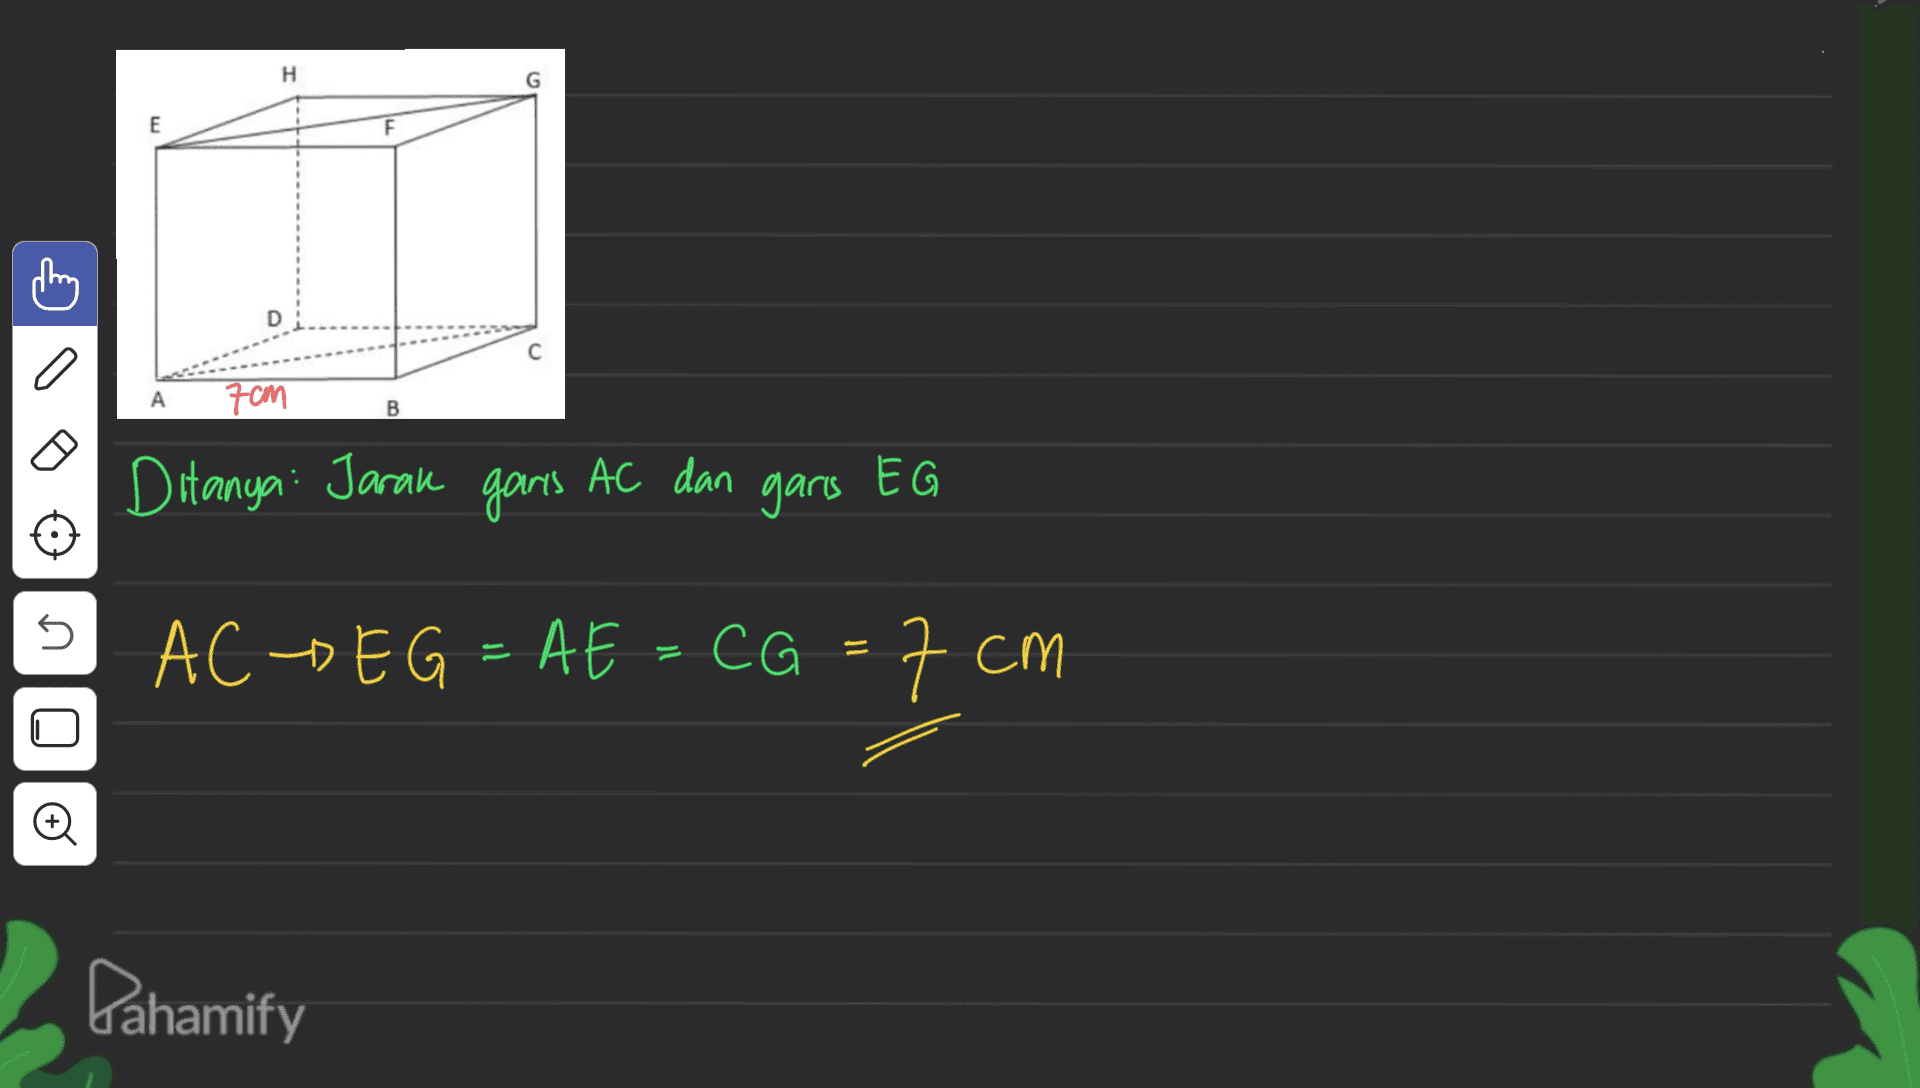 H G E D A 70M B Ditanya: Jarak garis AC dan garis EG s AC -> EG = AE = CG = 7 CM o Pahamify 